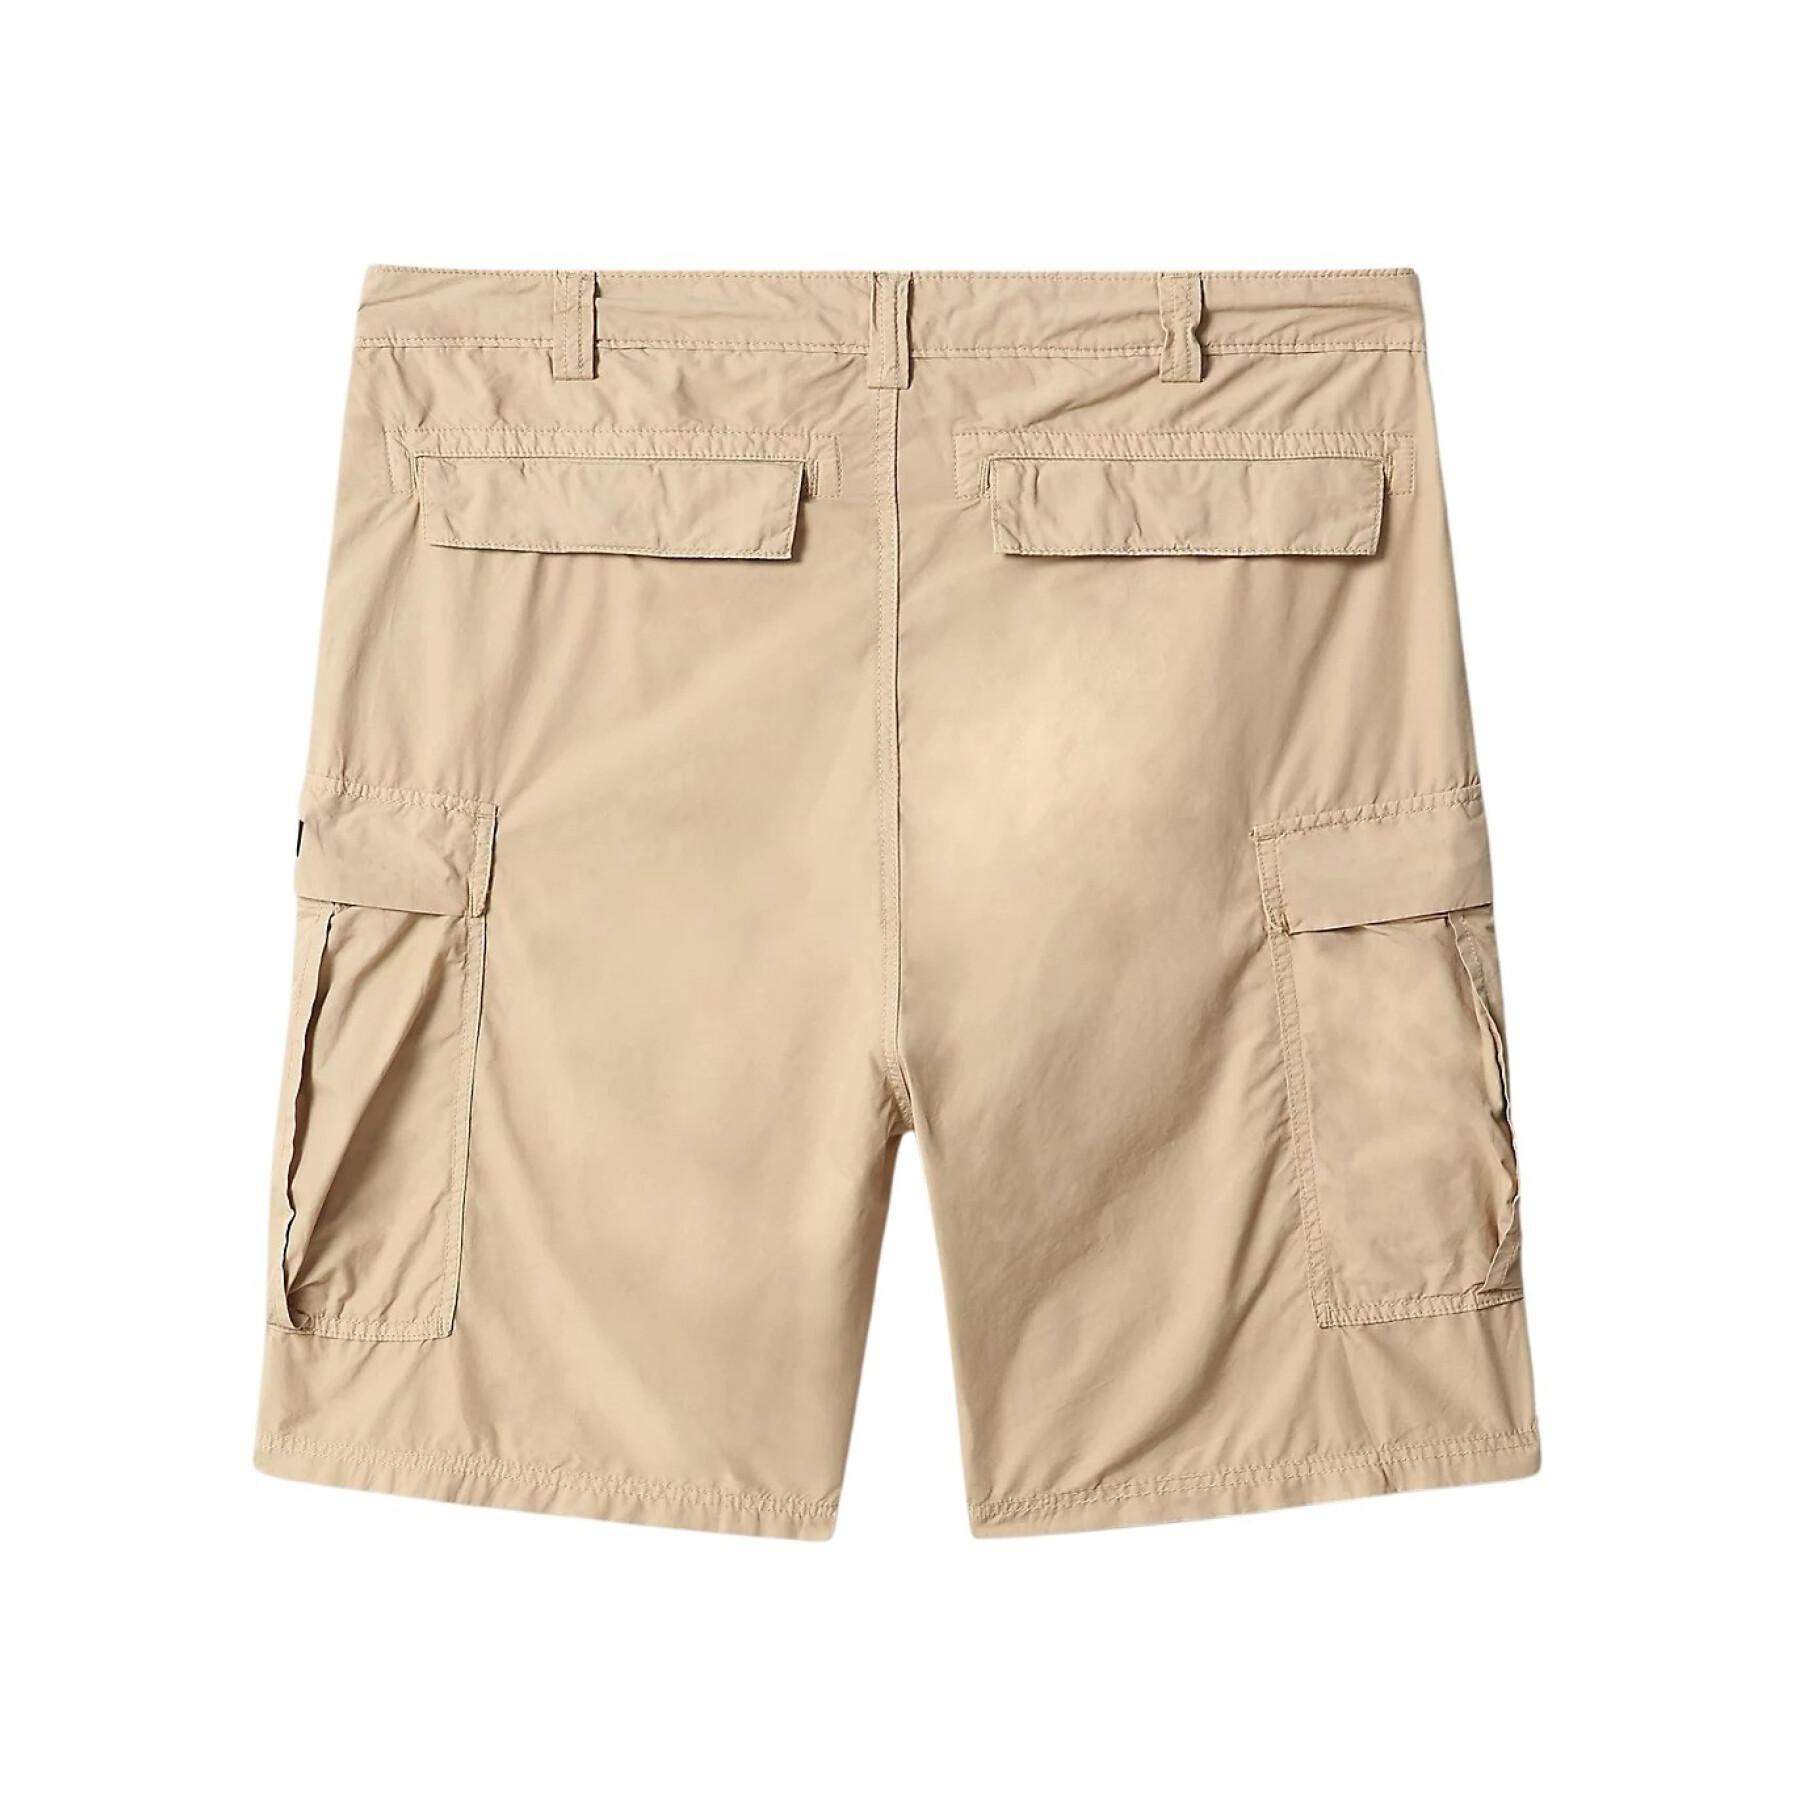 Bermuda shorts Napapijri Hanakapi